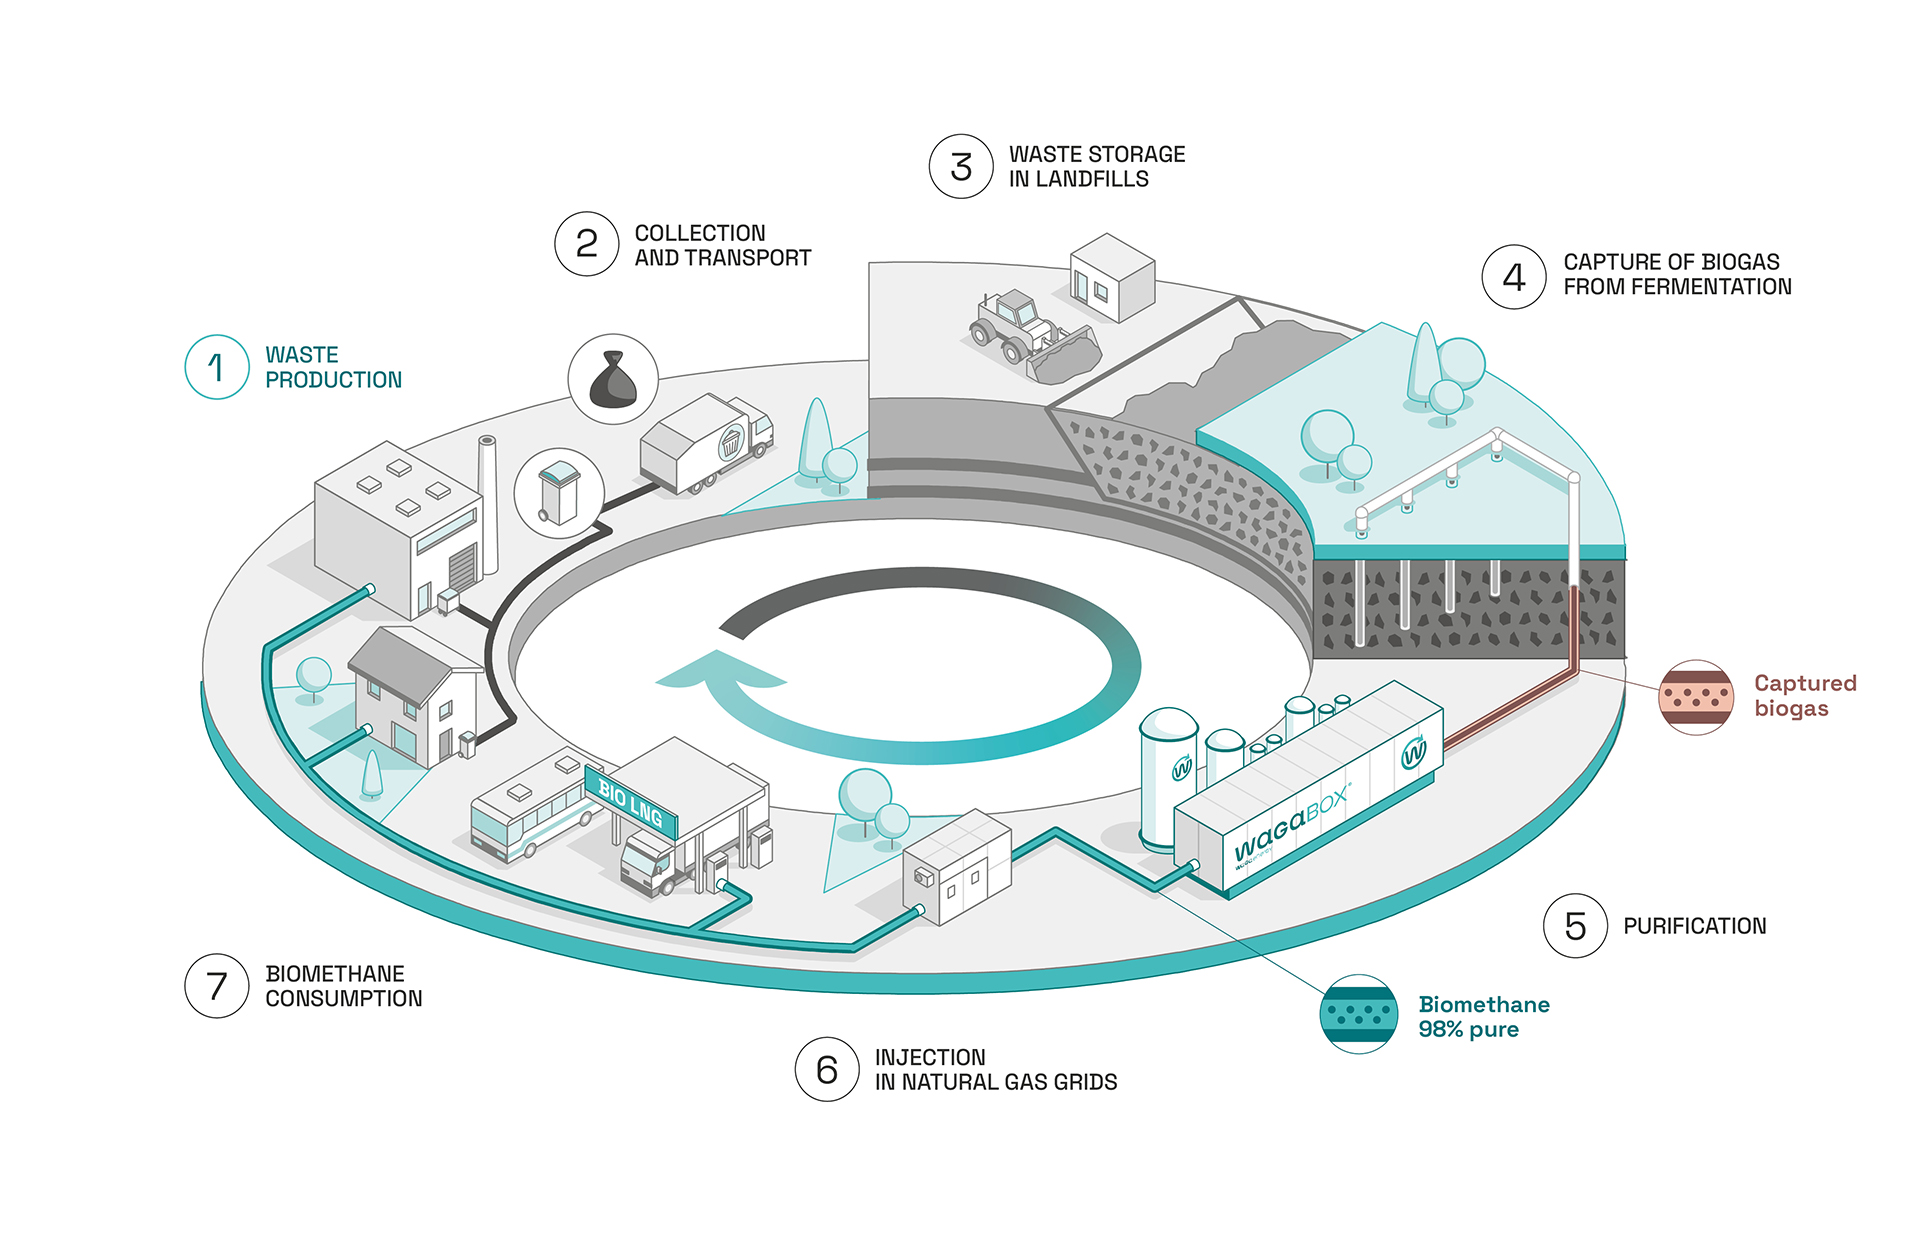 Diagrama mostrando o lugar da Waga Energy e da WAGABOX na economia circular. Estágio 1: Produção de resíduos por indivíduos e indústrias. Estágio 2: Coleta e transporte desses resíduos. Estágio 3: Enterro dos resíduos em uma instalação de armazenamento de resíduos não perigosos (ISDND). Estágio 4: Captura do biogás produzido pela fermentação dos resíduos depositados em aterros. Etapa 5: Purificação do biogás. Estágio 6: Injeção de biometano com 98% de pureza na rede de gás natural. Estágio 7: Consumo de biometano por clientes residenciais e industriais.